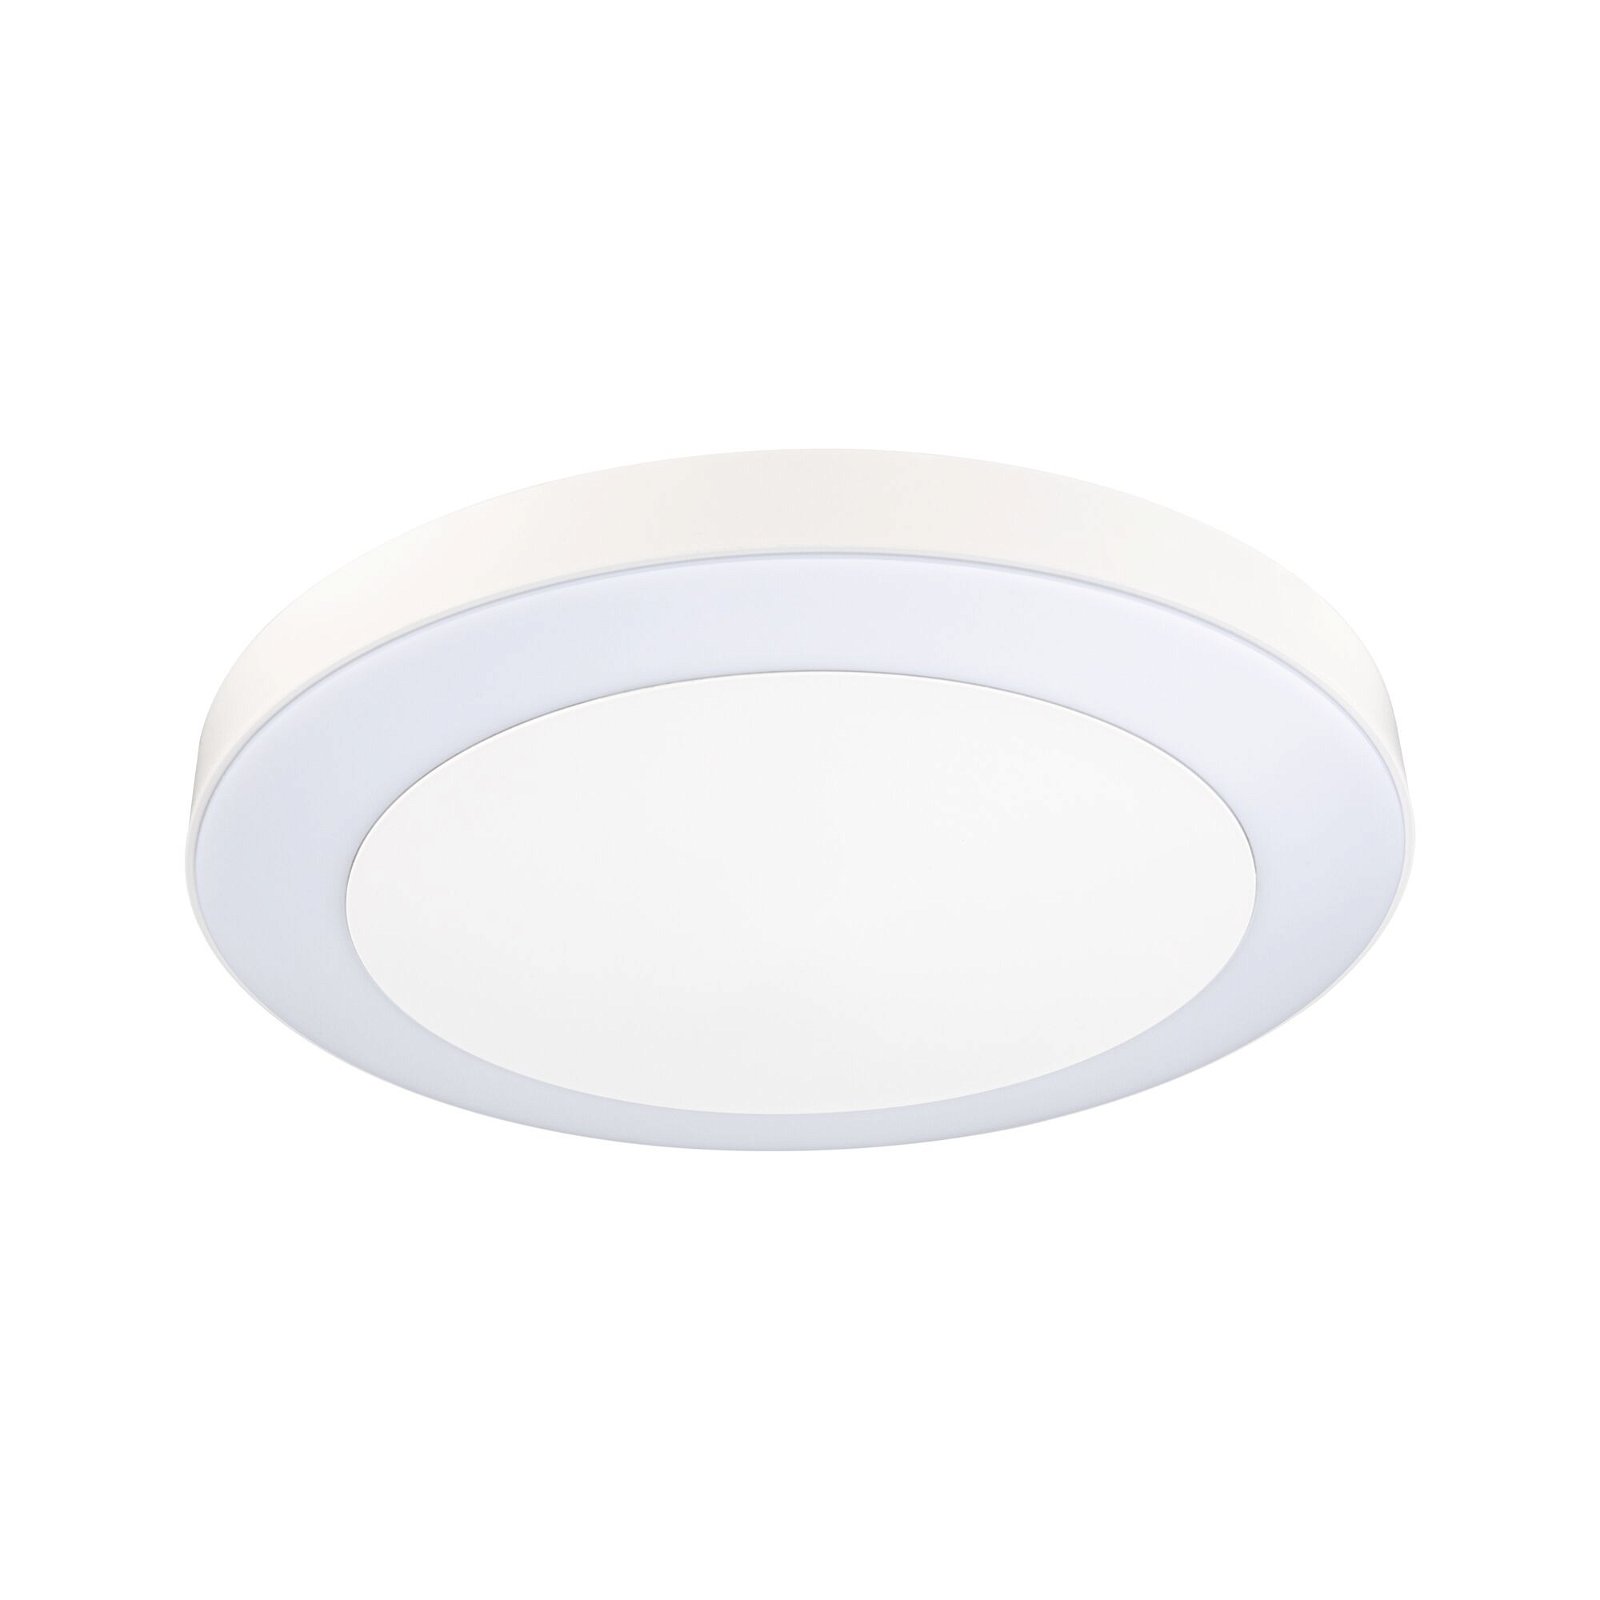 Plafonnier LED Smart Home Zigbee 3.0 Circula Détecteur crépusculaire favorable aux insectes IP44 rond 320mm Tunable Warm 14W 880lm 230V Blanc Matière plastique